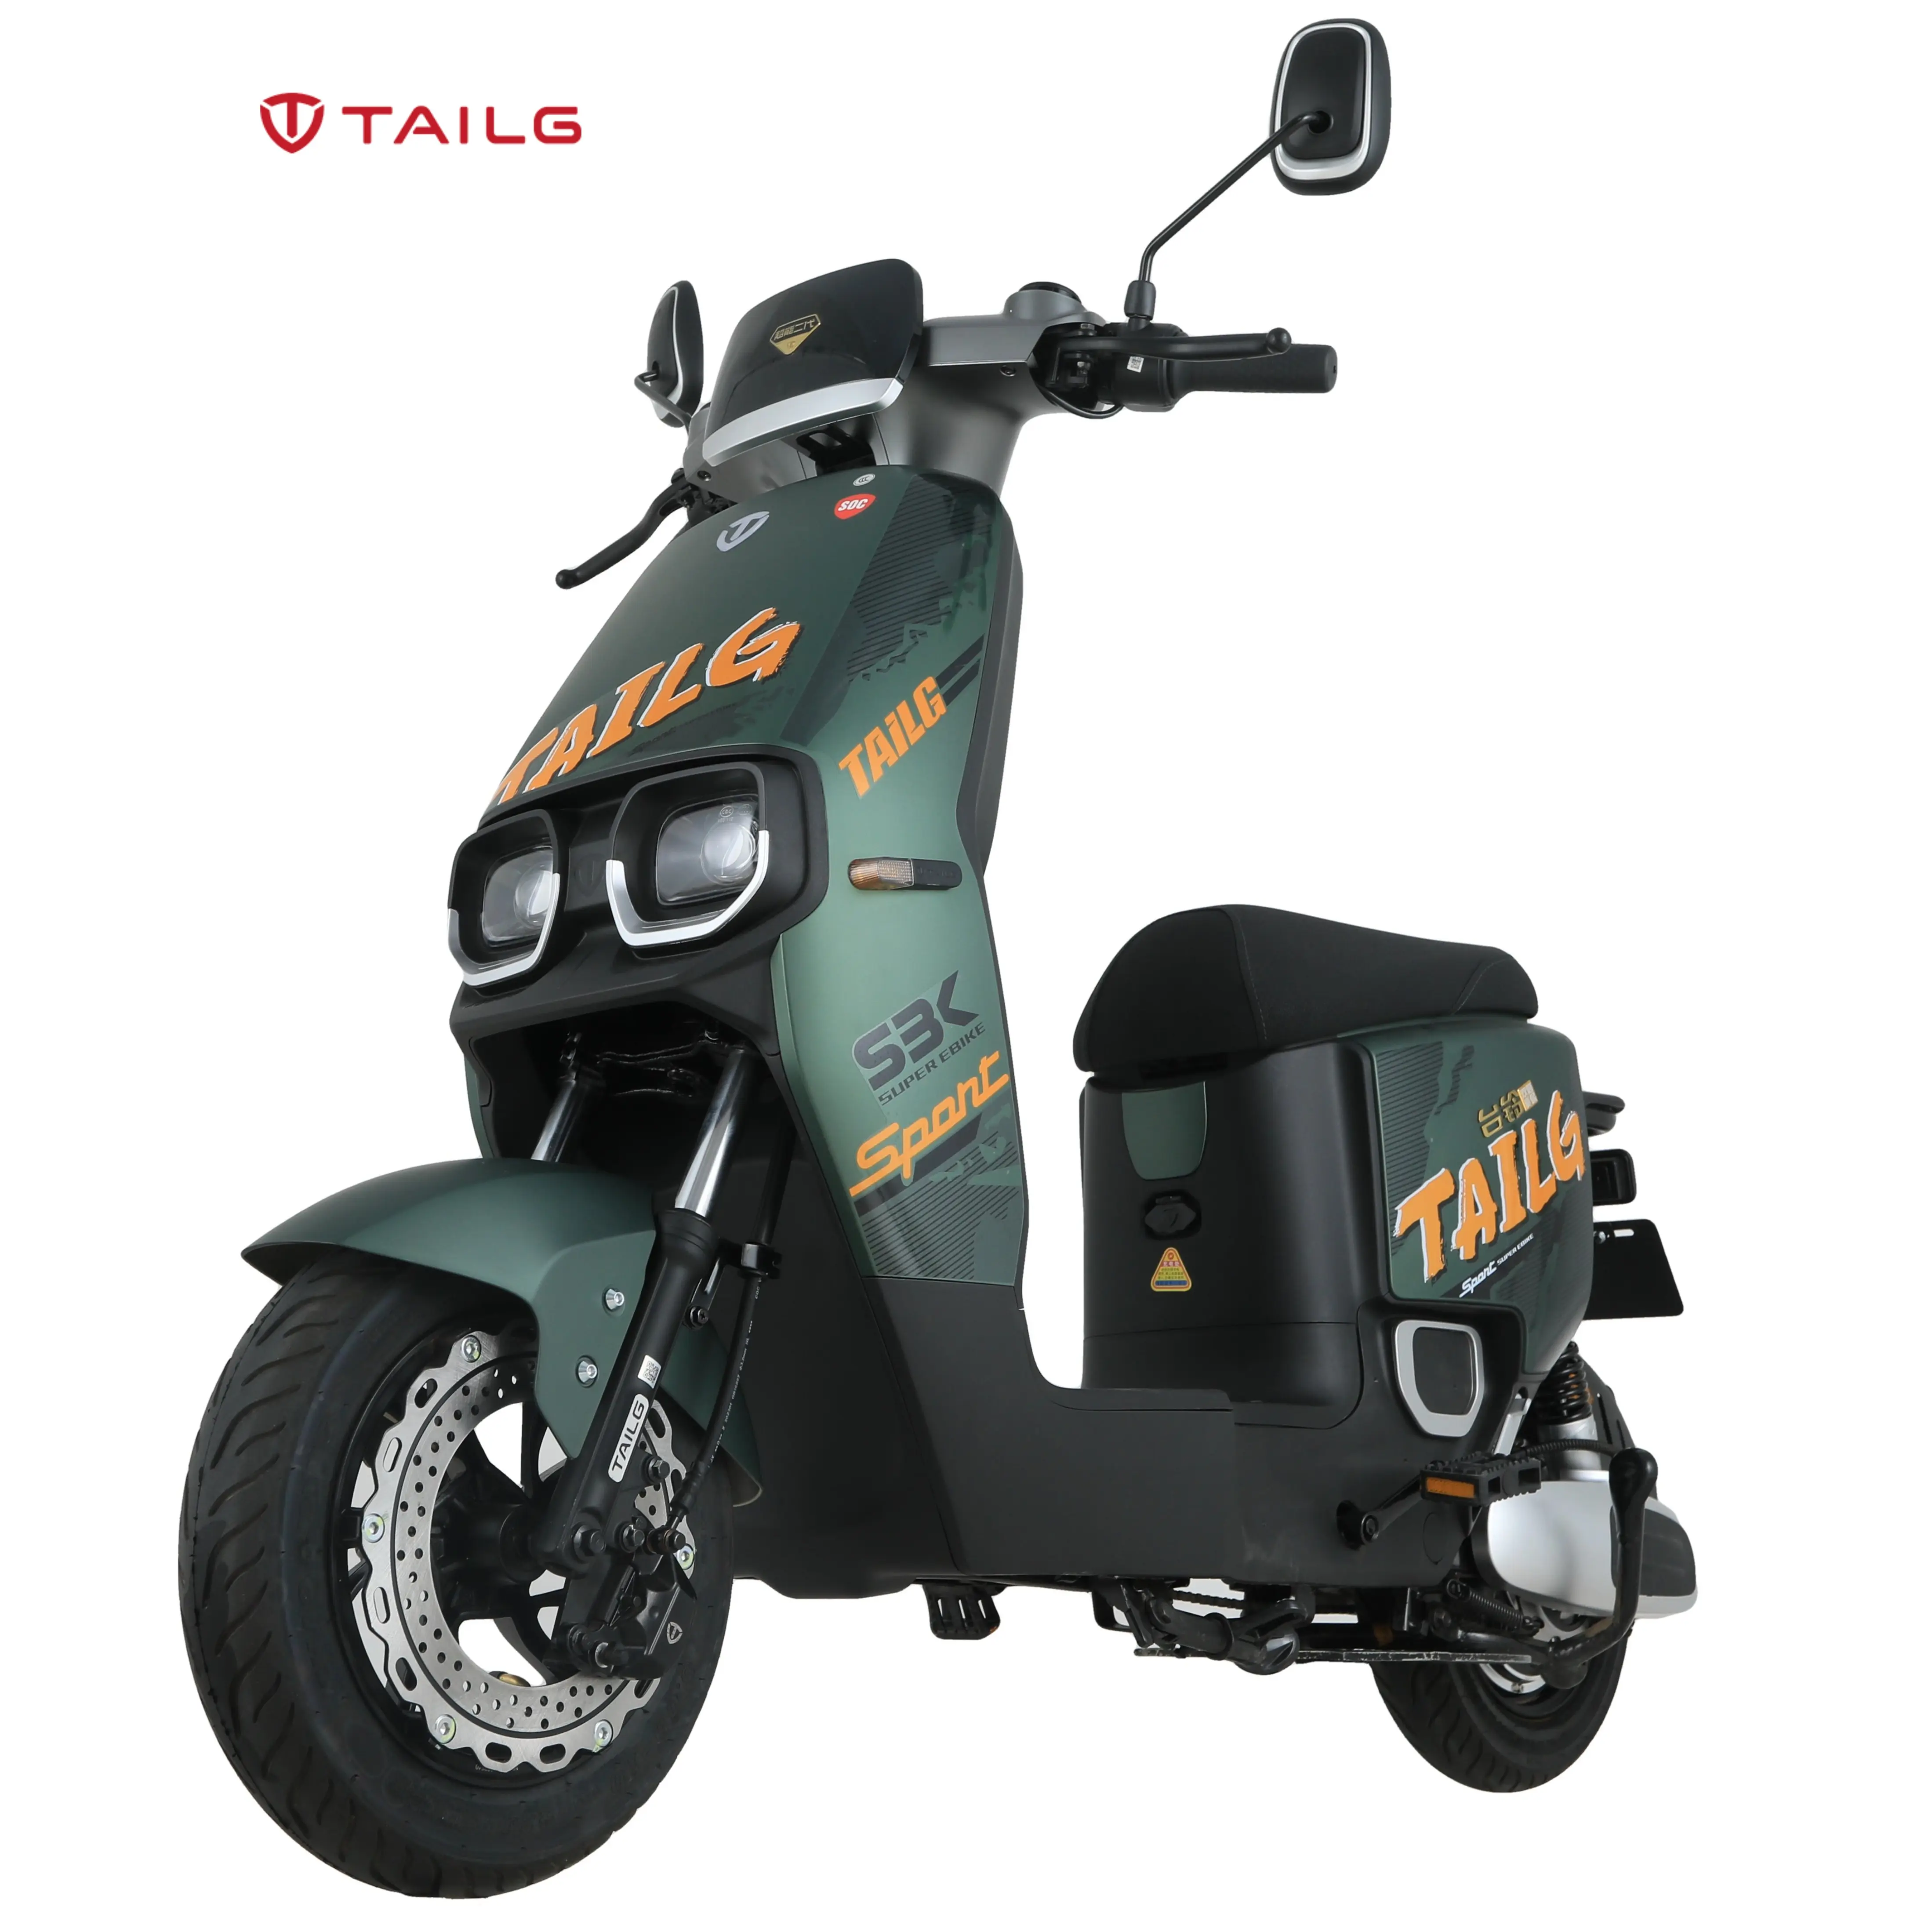 TAILG sepeda motor skuter Vespa olahraga, baterai Lithium kualitas tinggi 2 tempat duduk untuk dewasa